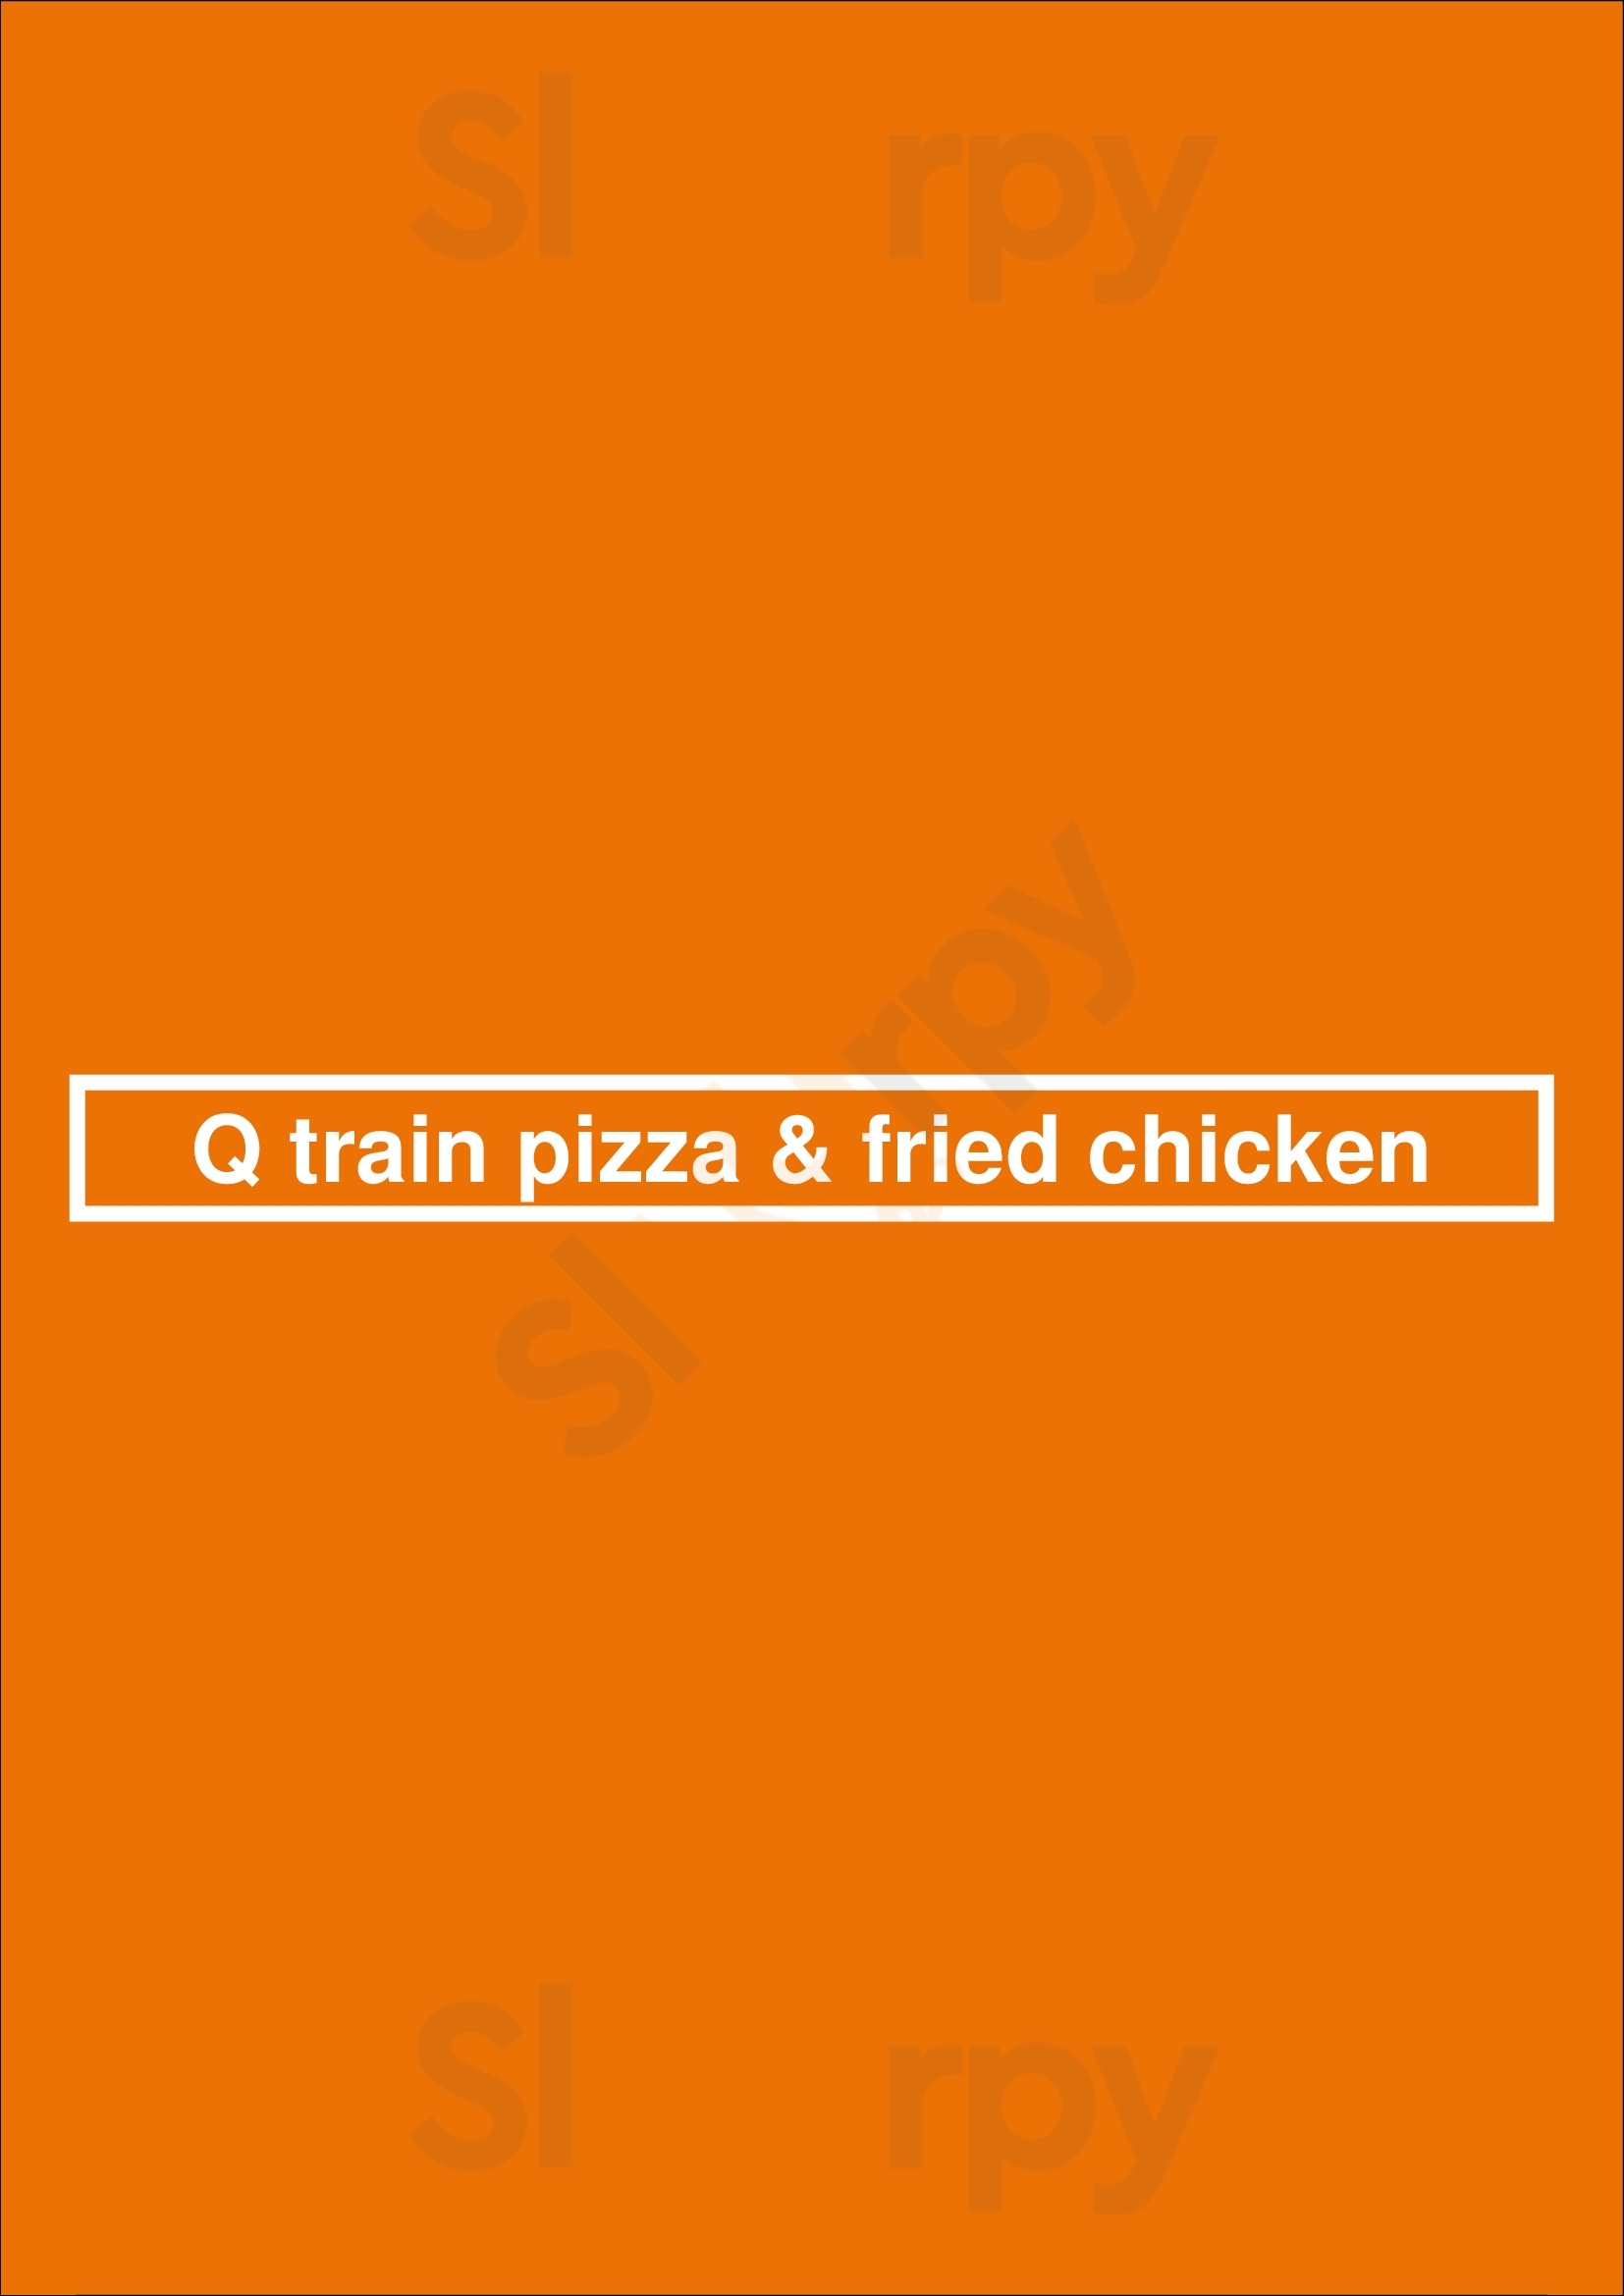 Q-train Pizza & Fried Chicken Brooklyn Menu - 1